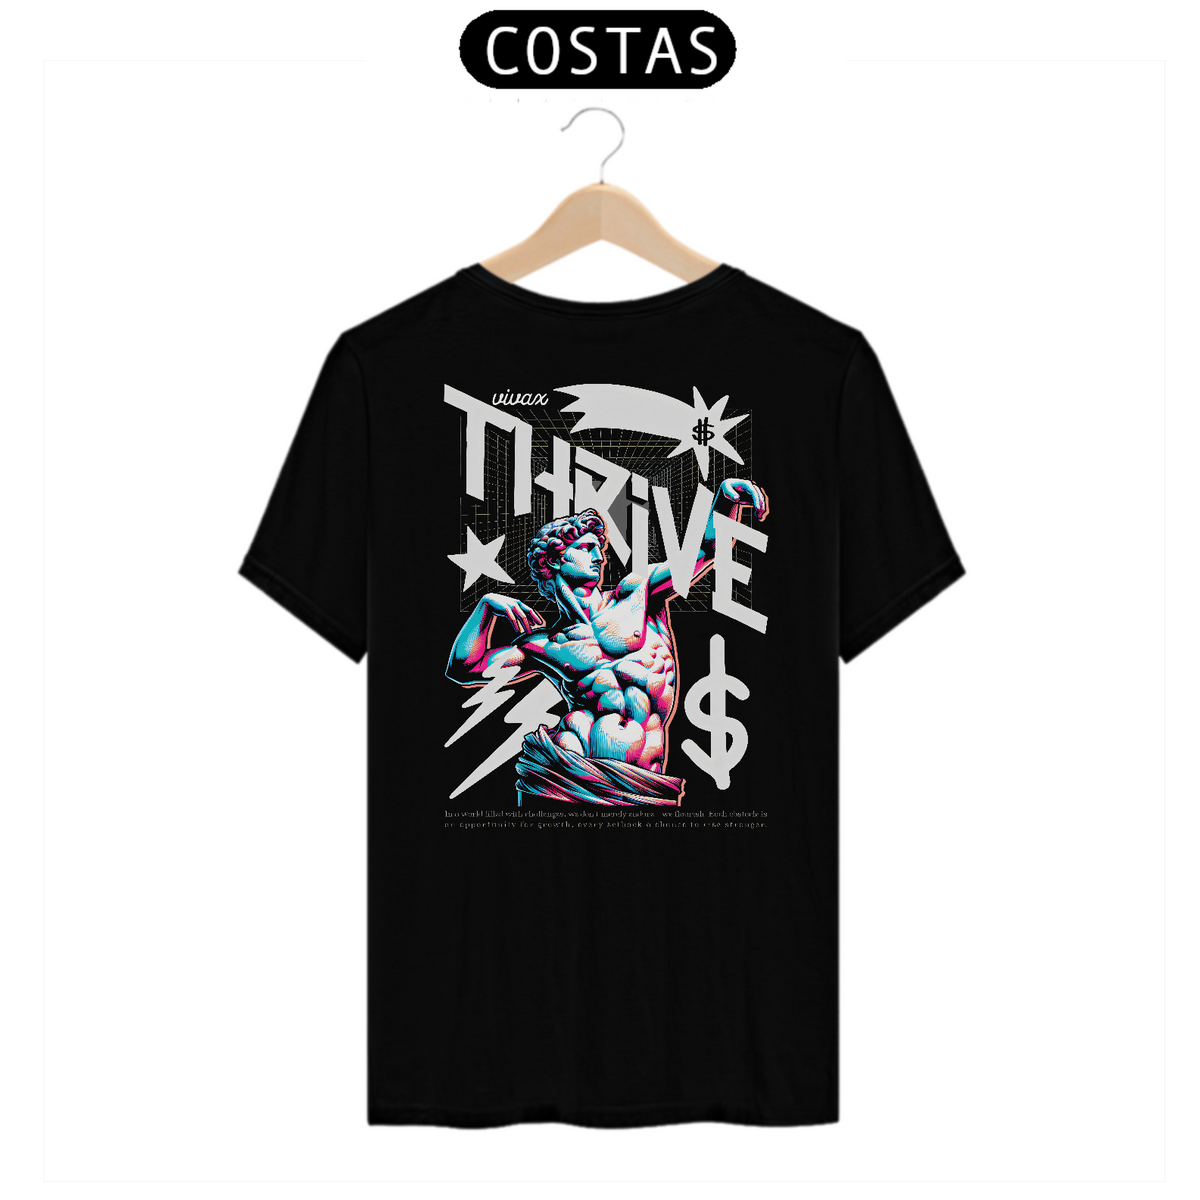 Nome do produto: Camiseta Quality Vivax - Thrive